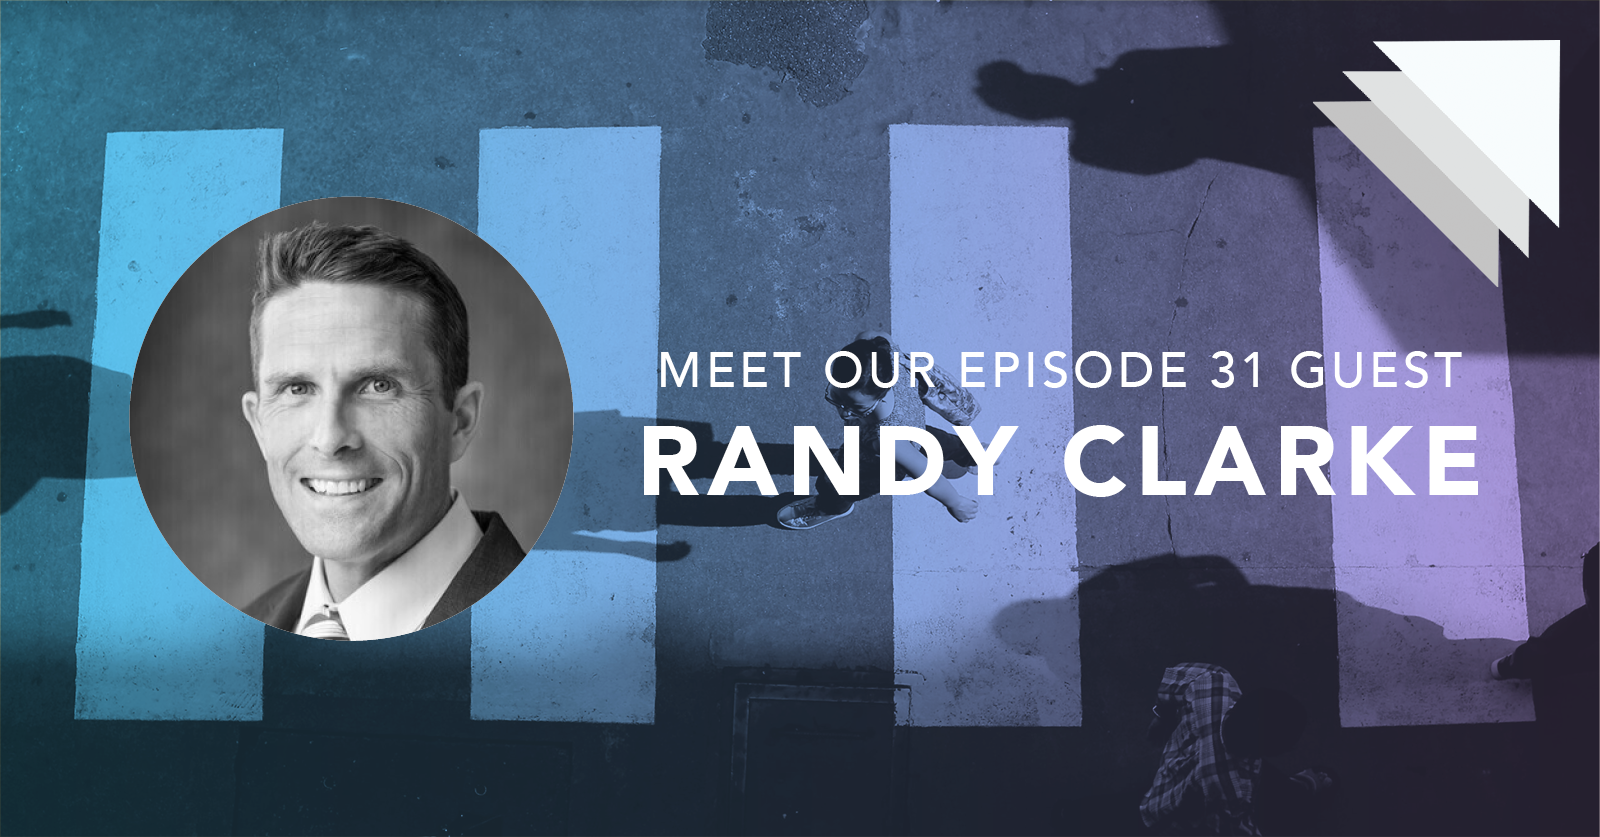 Meet our episode 31 guest Randy Clarke